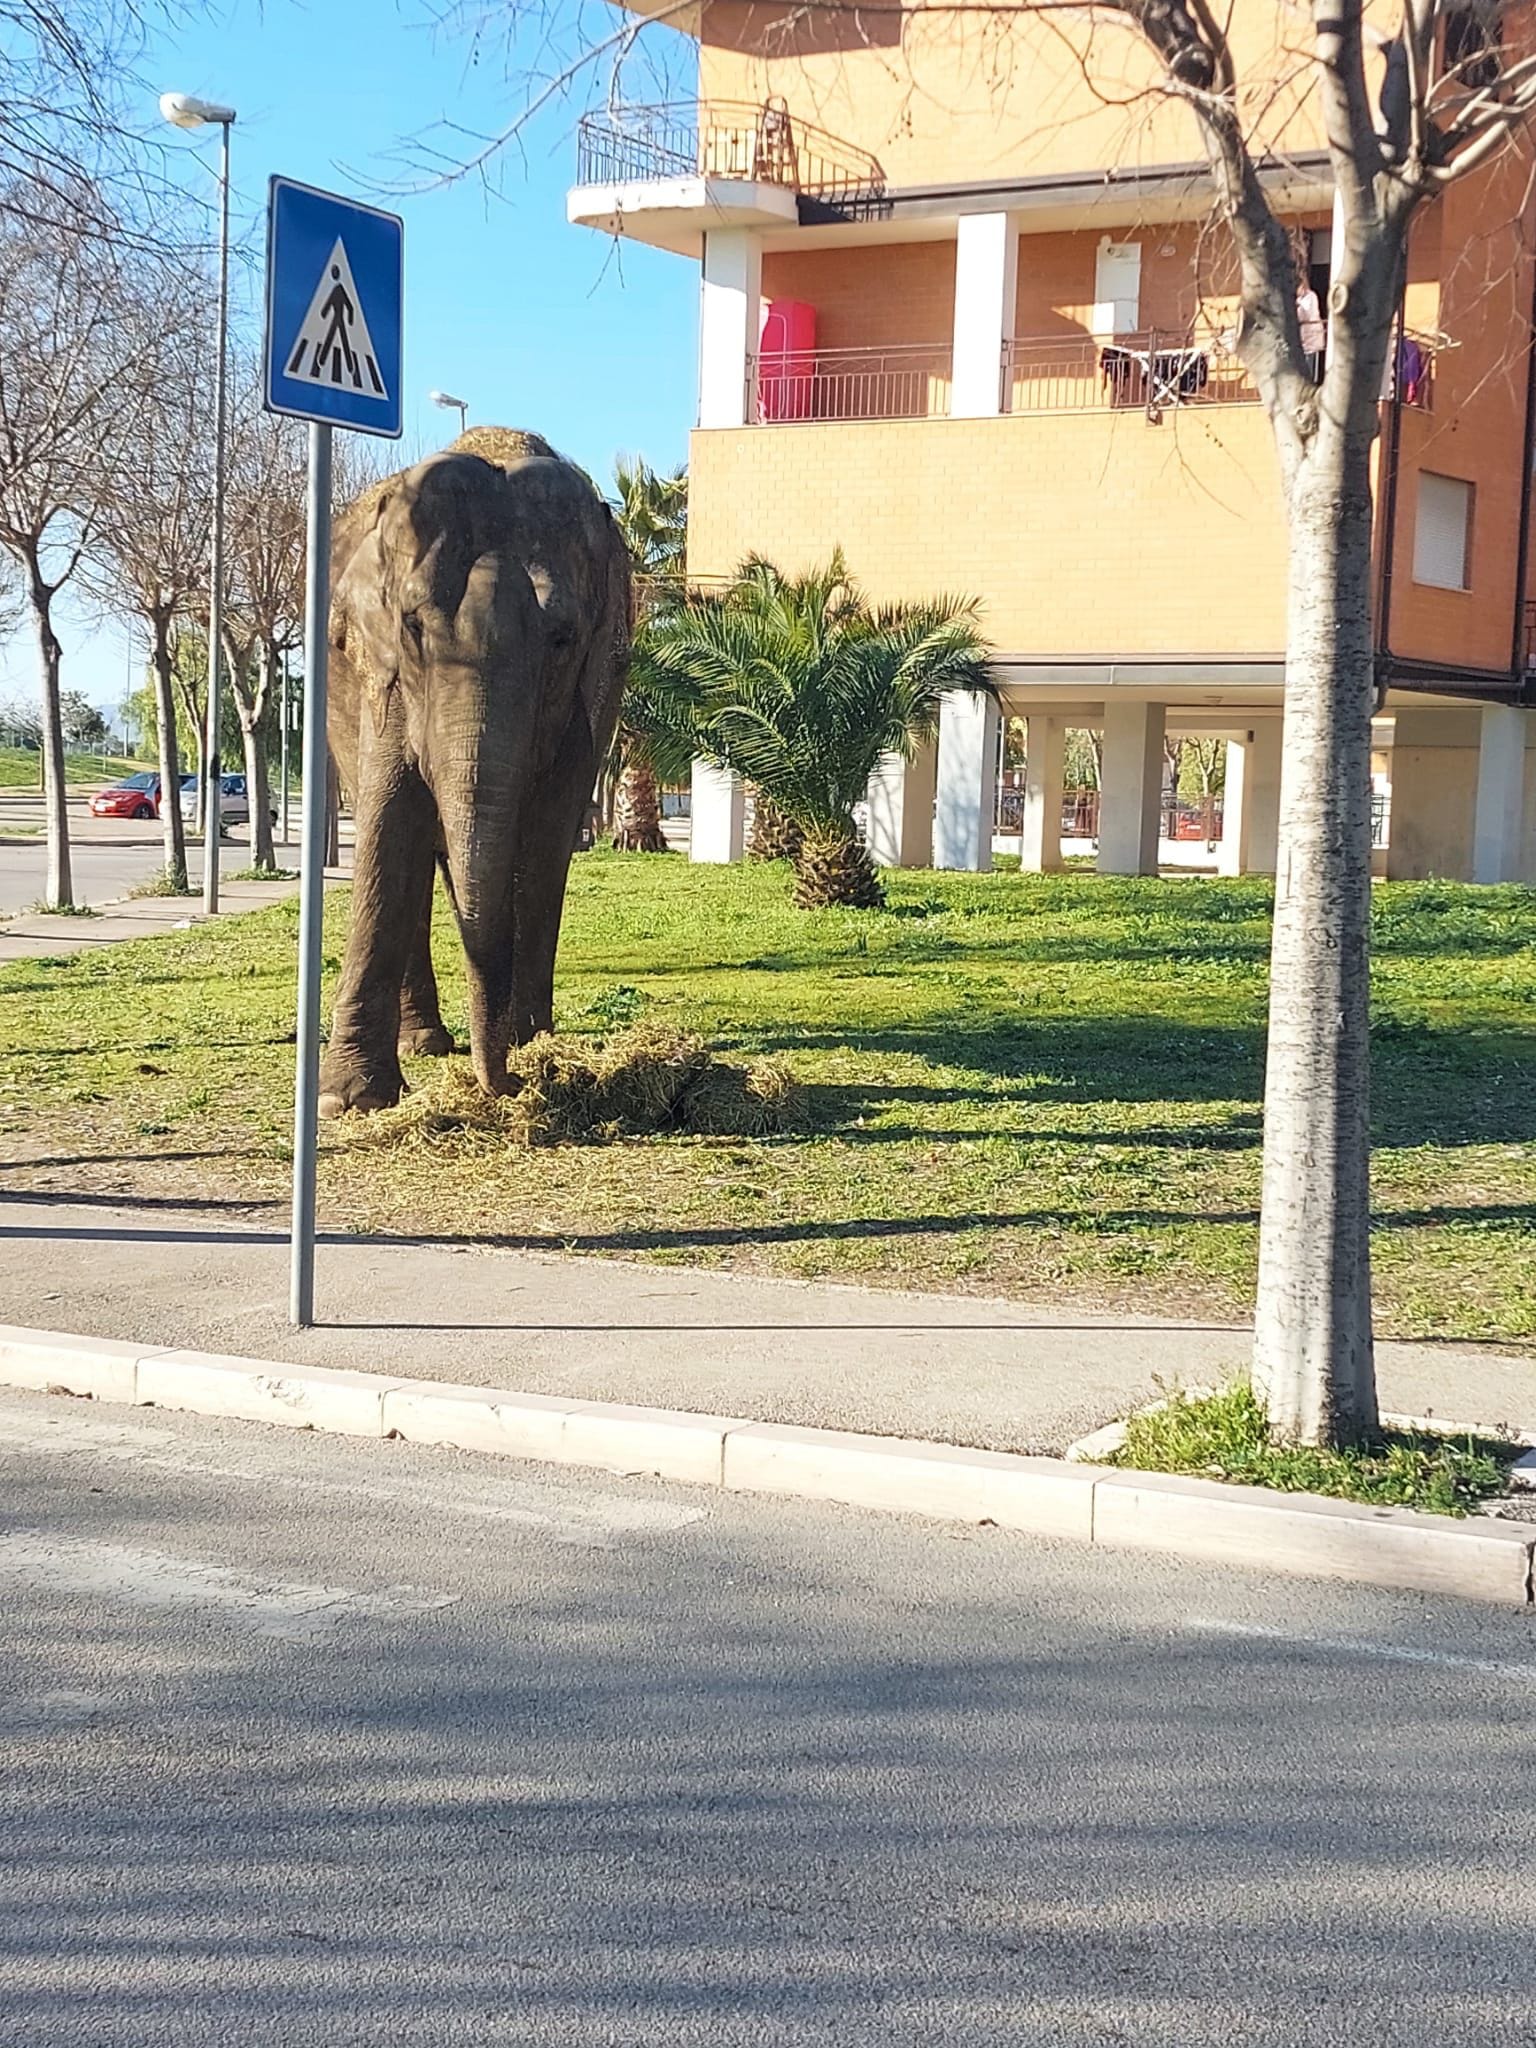 Nella foto si vede un elefante che cammina su un'aiuola di fianco a una strada urbana, alle spalle un palazzo.